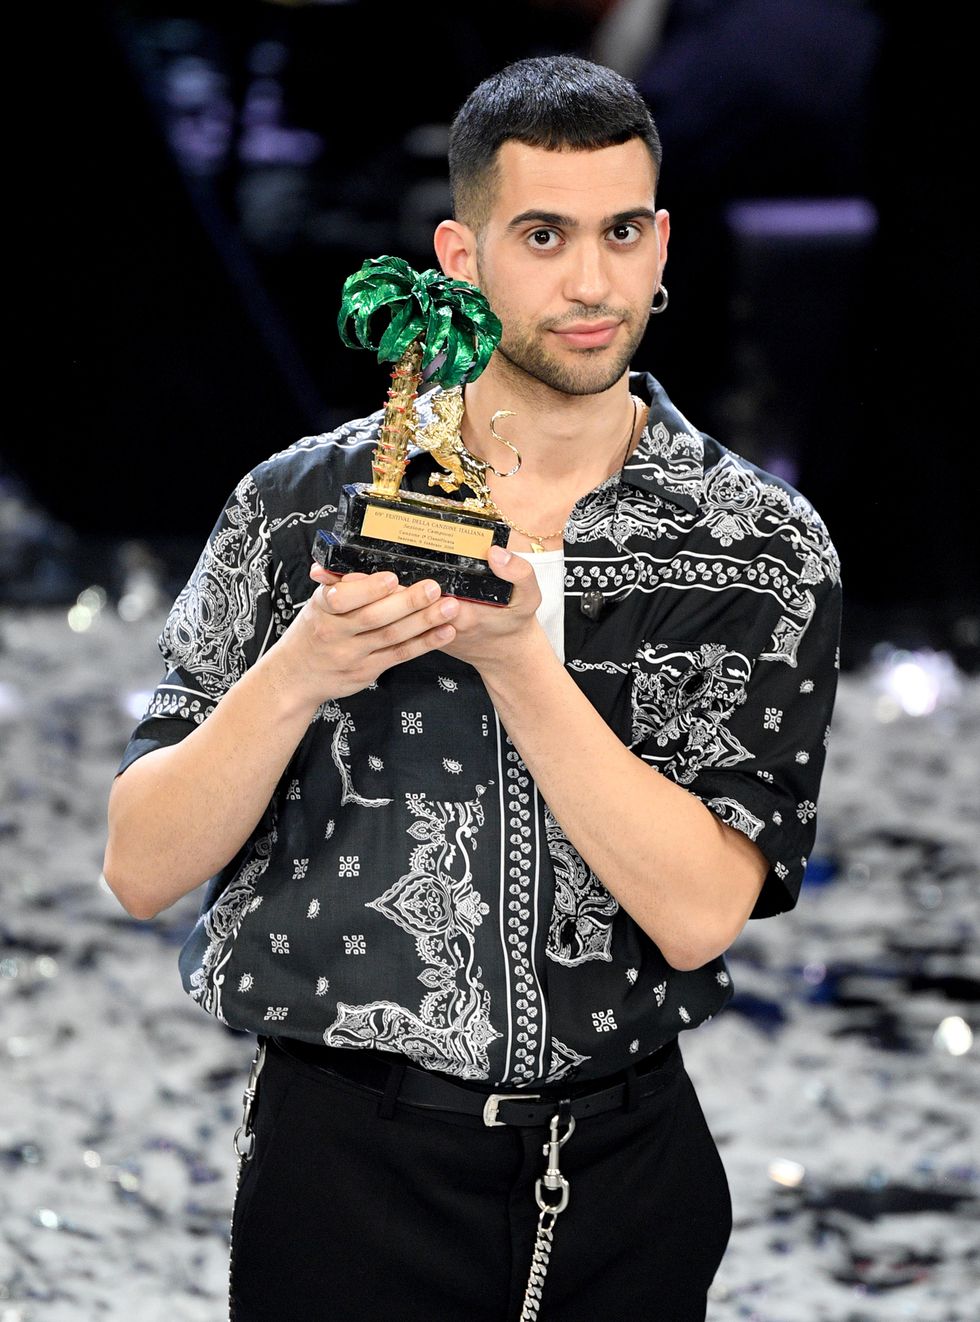 Mahmood vince Sanremo 2019 anche con un look anni 90, uno schema semplice fatto di camice uomo stampate eccentriche come se fossero state prese dall'armadio di papà, in un'operazione nostalgia di adolescente.